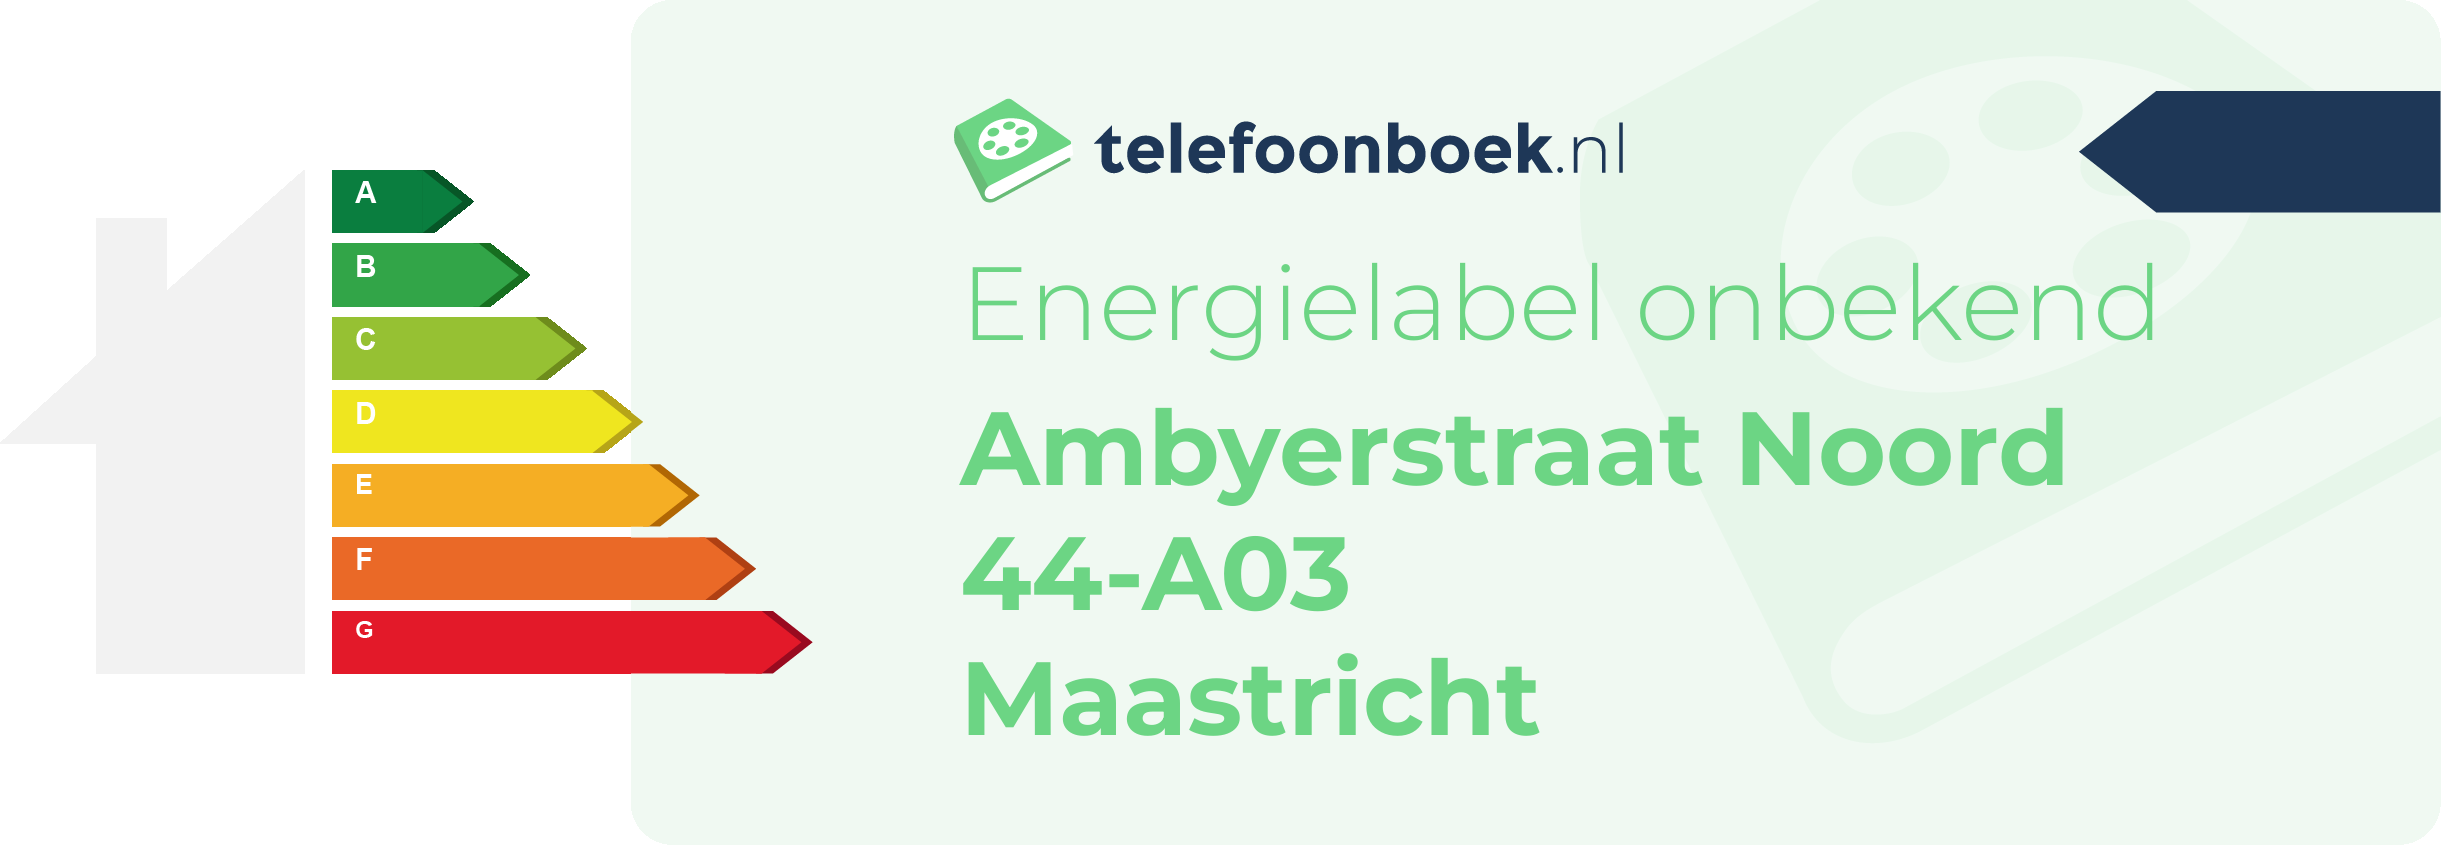 Energielabel Ambyerstraat Noord 44-A03 Maastricht